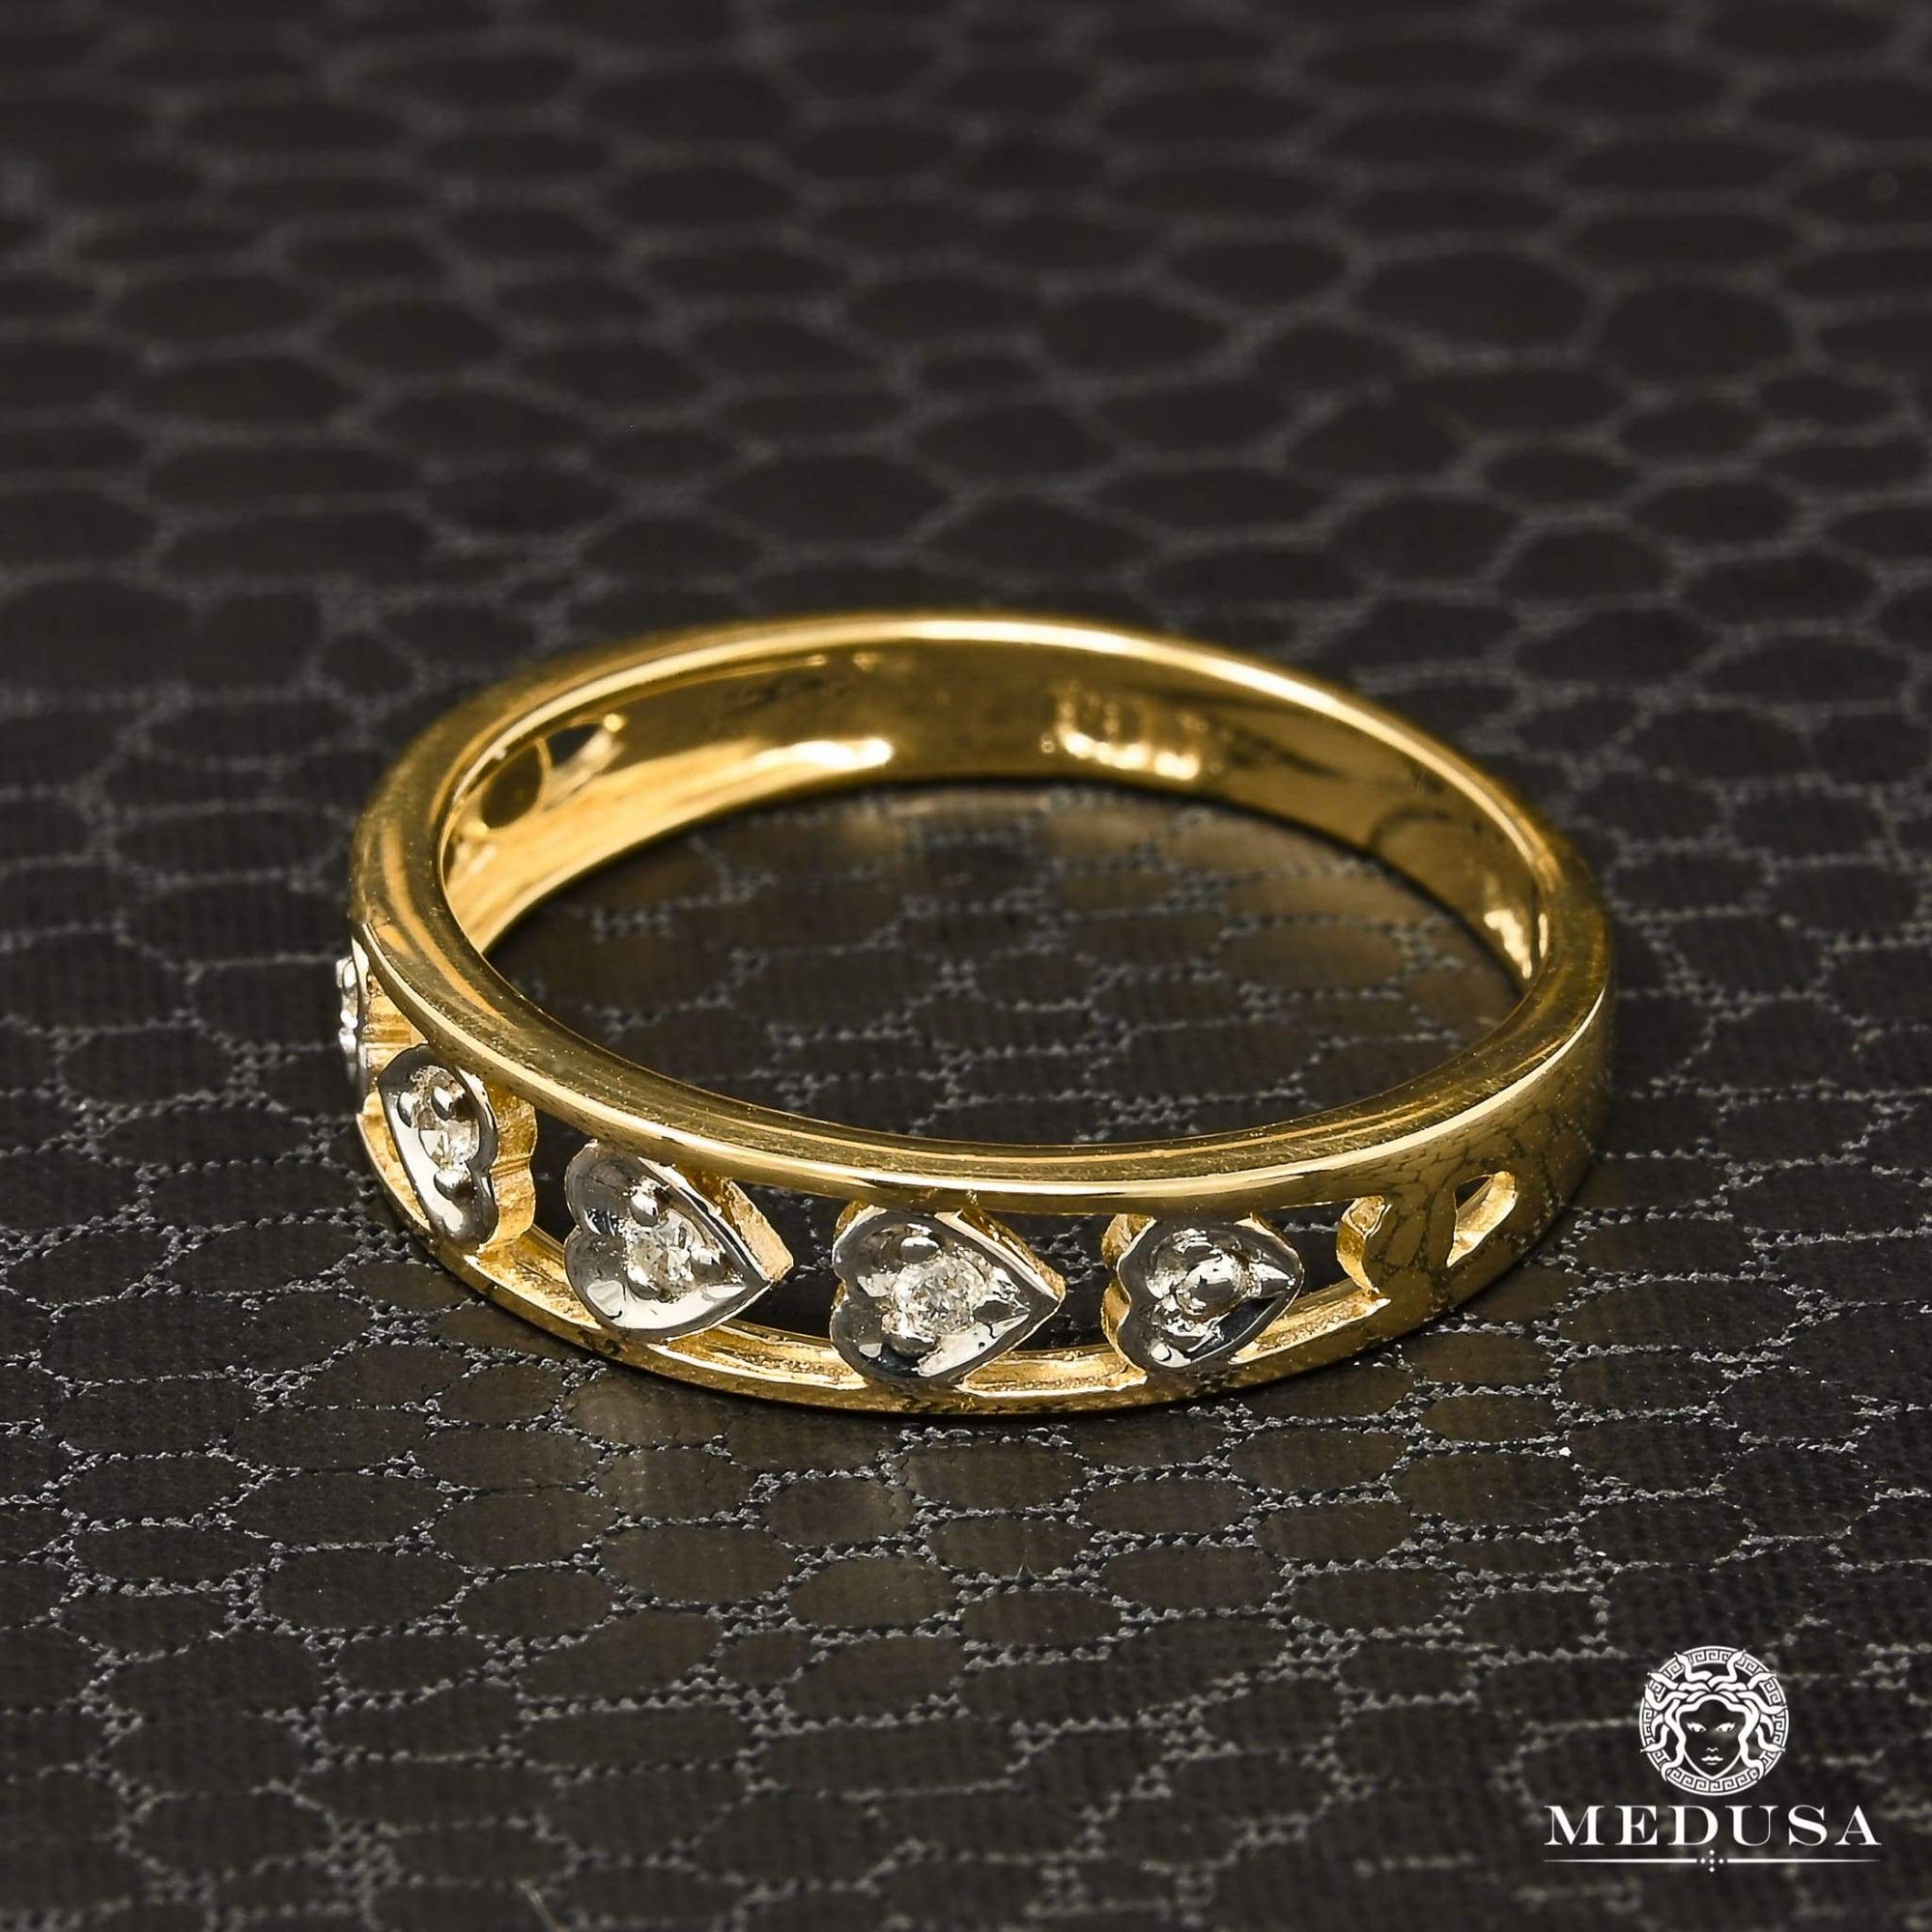 14K Gold Diamond Ring | Women's Ring Heart D10 - 4PT Diamond / 2 Tone Gold